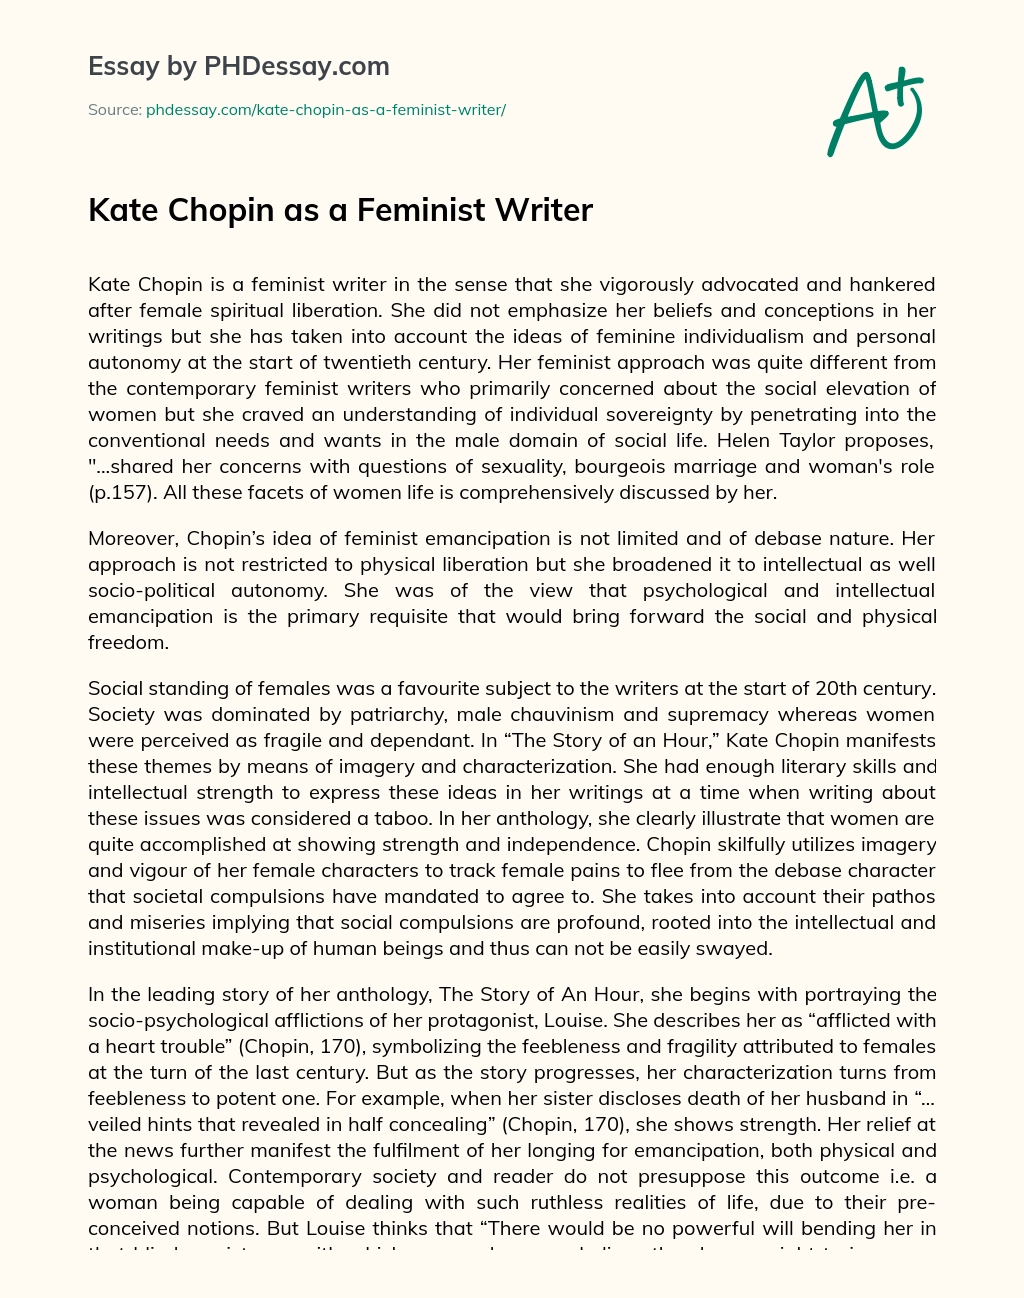 kate chopin feminist writer